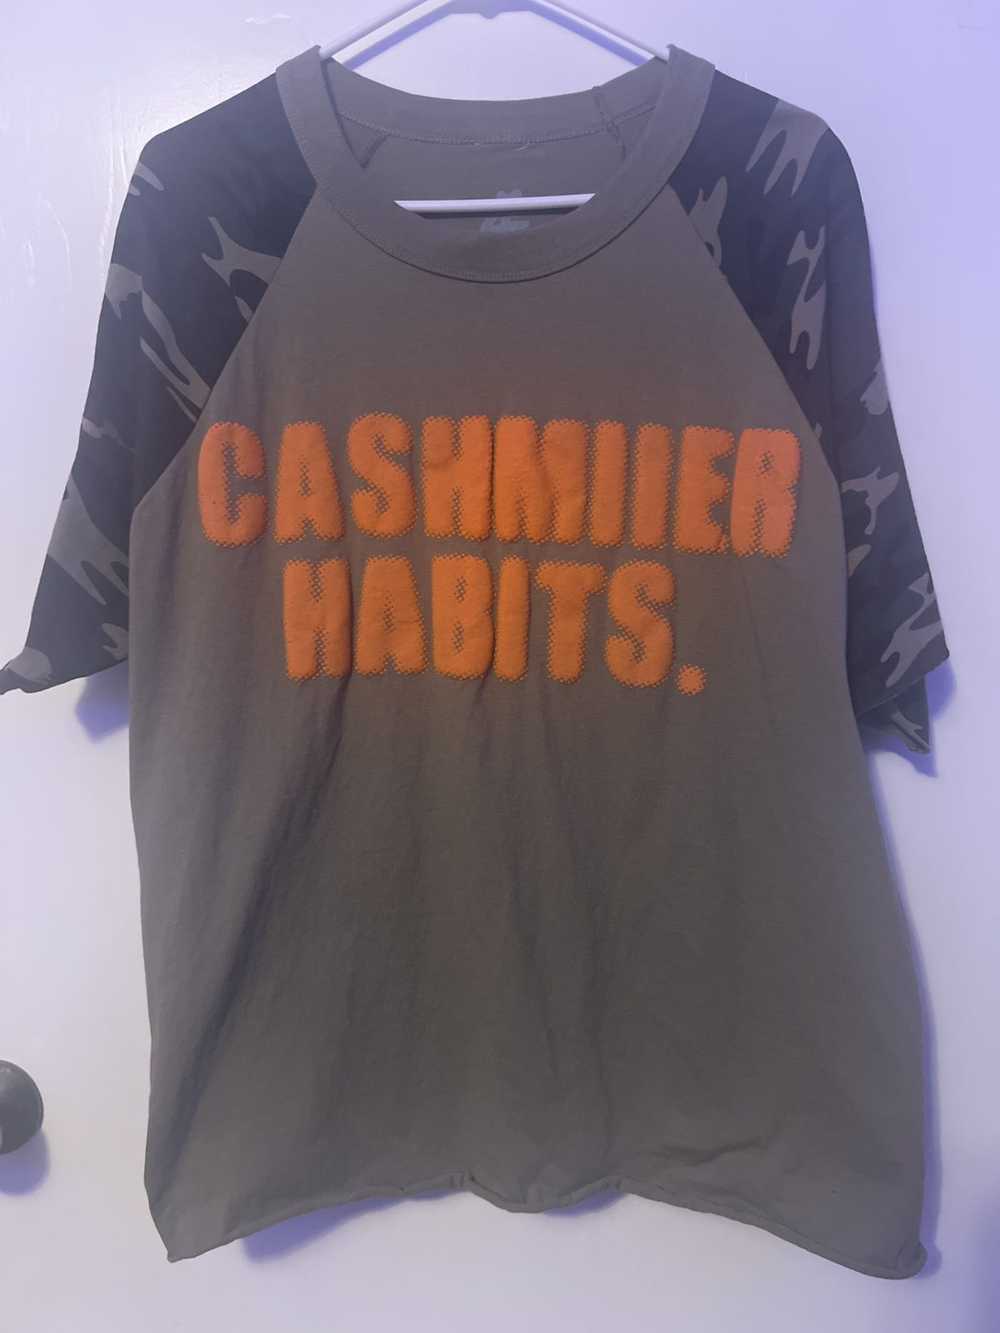 Designer × Other × Streetwear Cashmiier habits co… - image 1